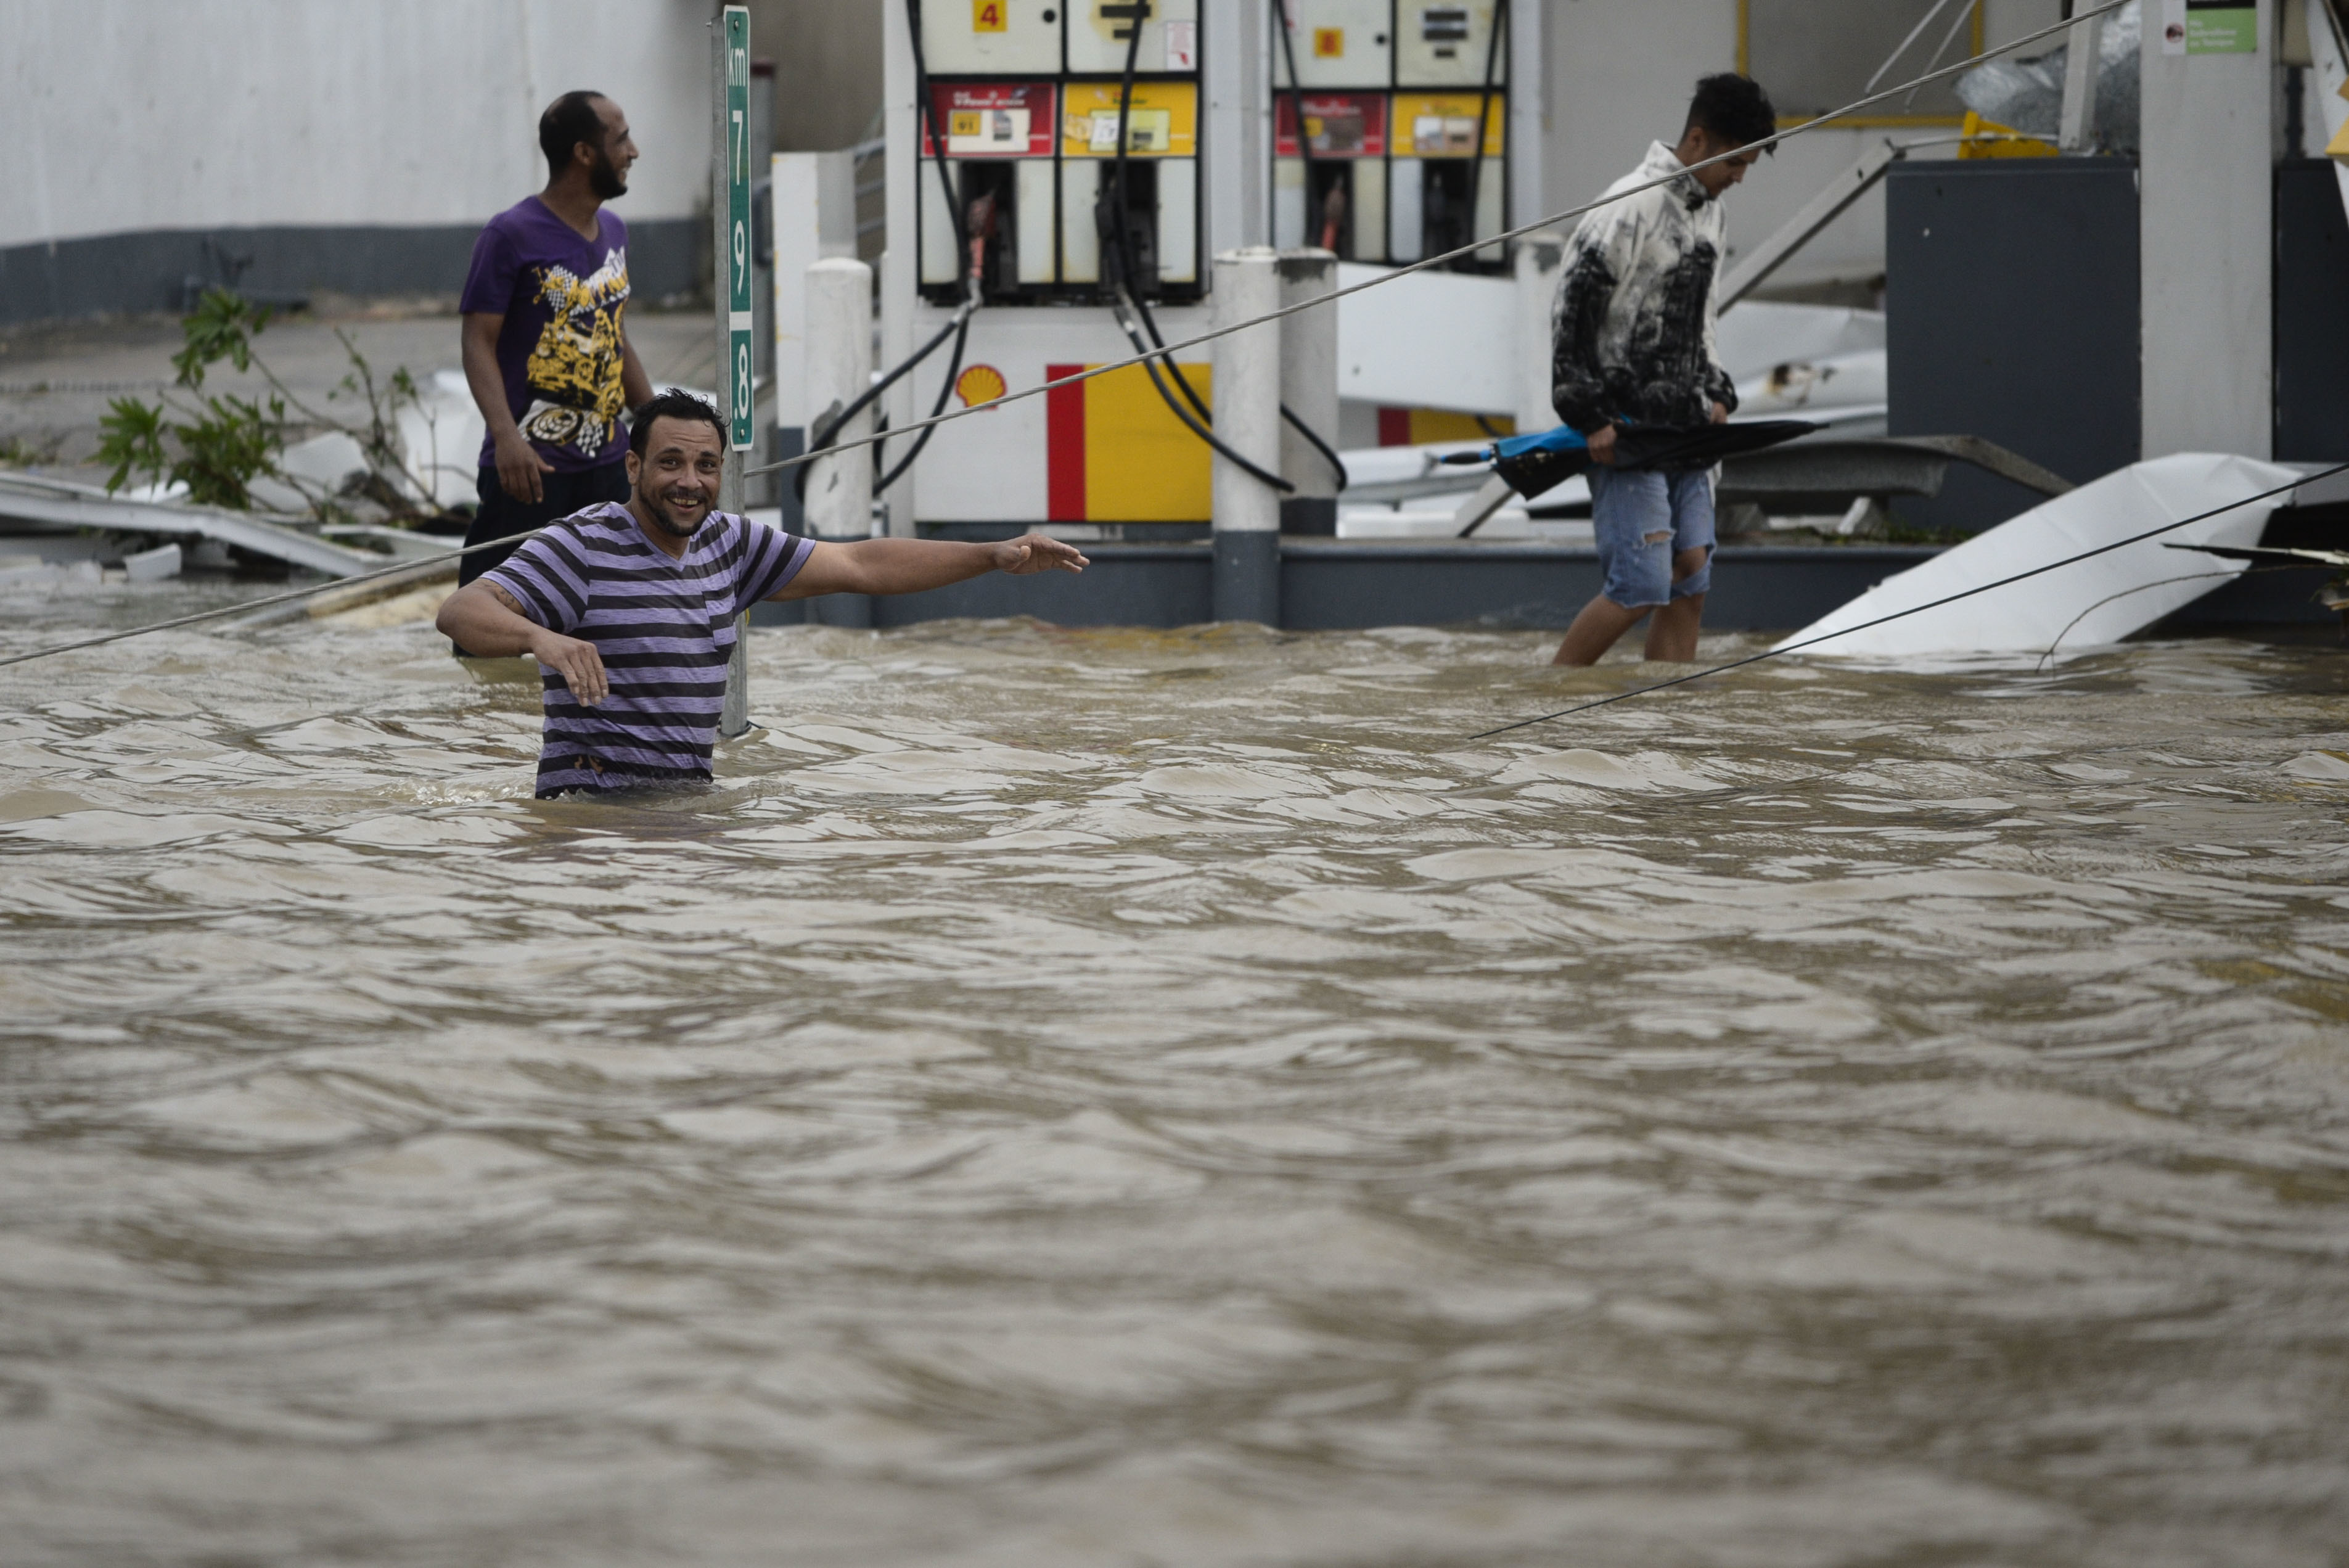 Partes de las isla, como en Humacao quedaron inundadas por el desbordamiento de unos ríos. (AP Photo/Carlos Giusti)